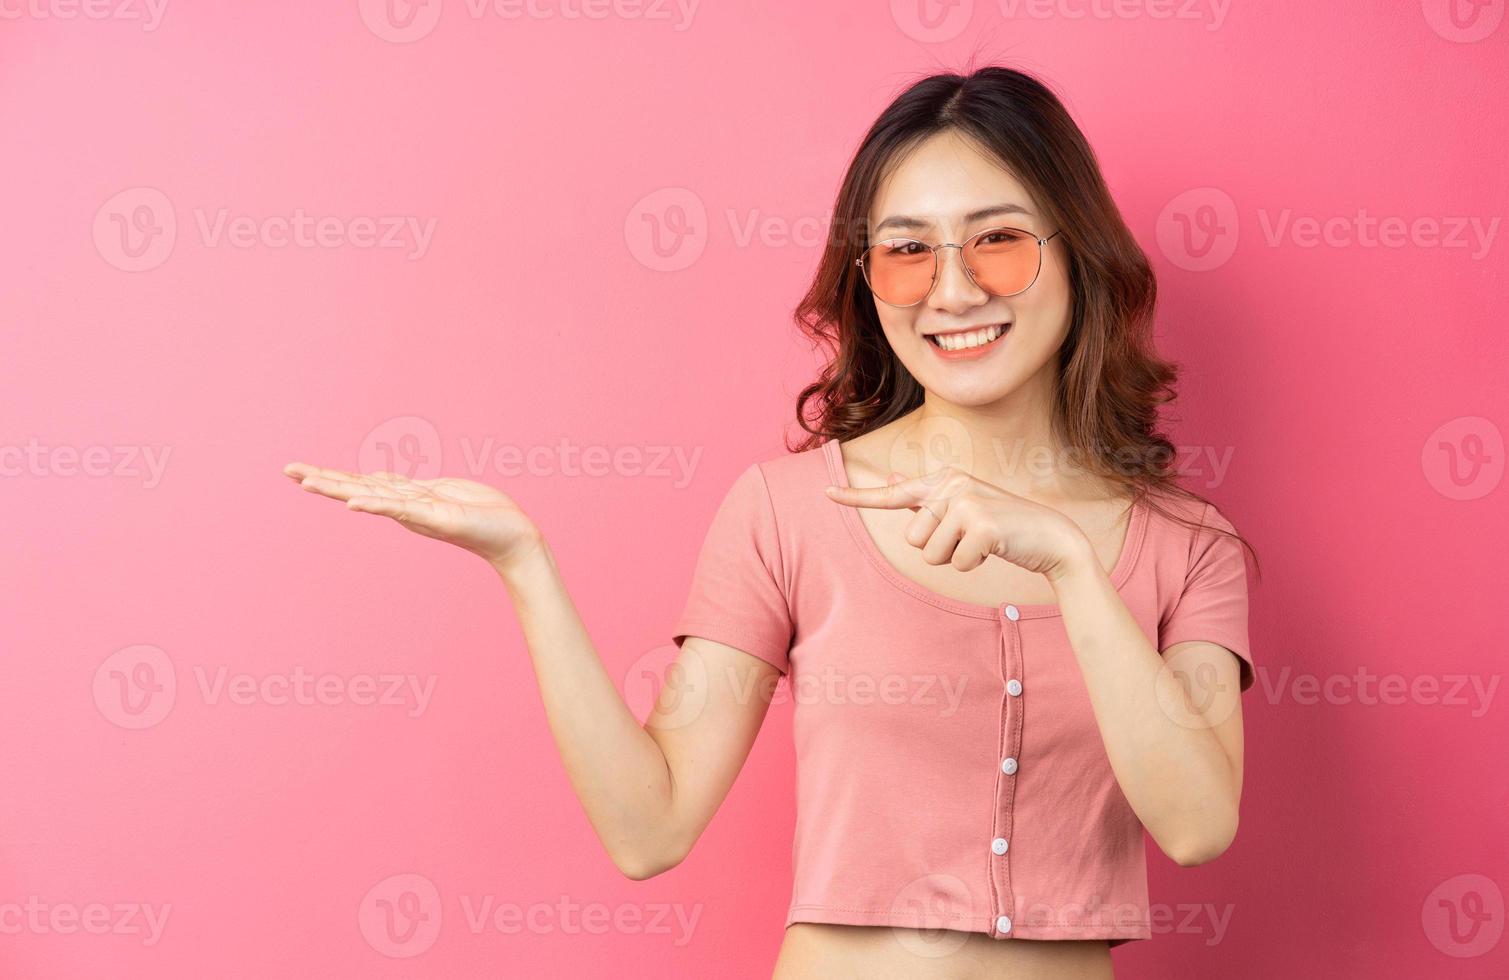 jovem mulher asiática usando óculos com uma expressão alegre em um fundo rosa foto